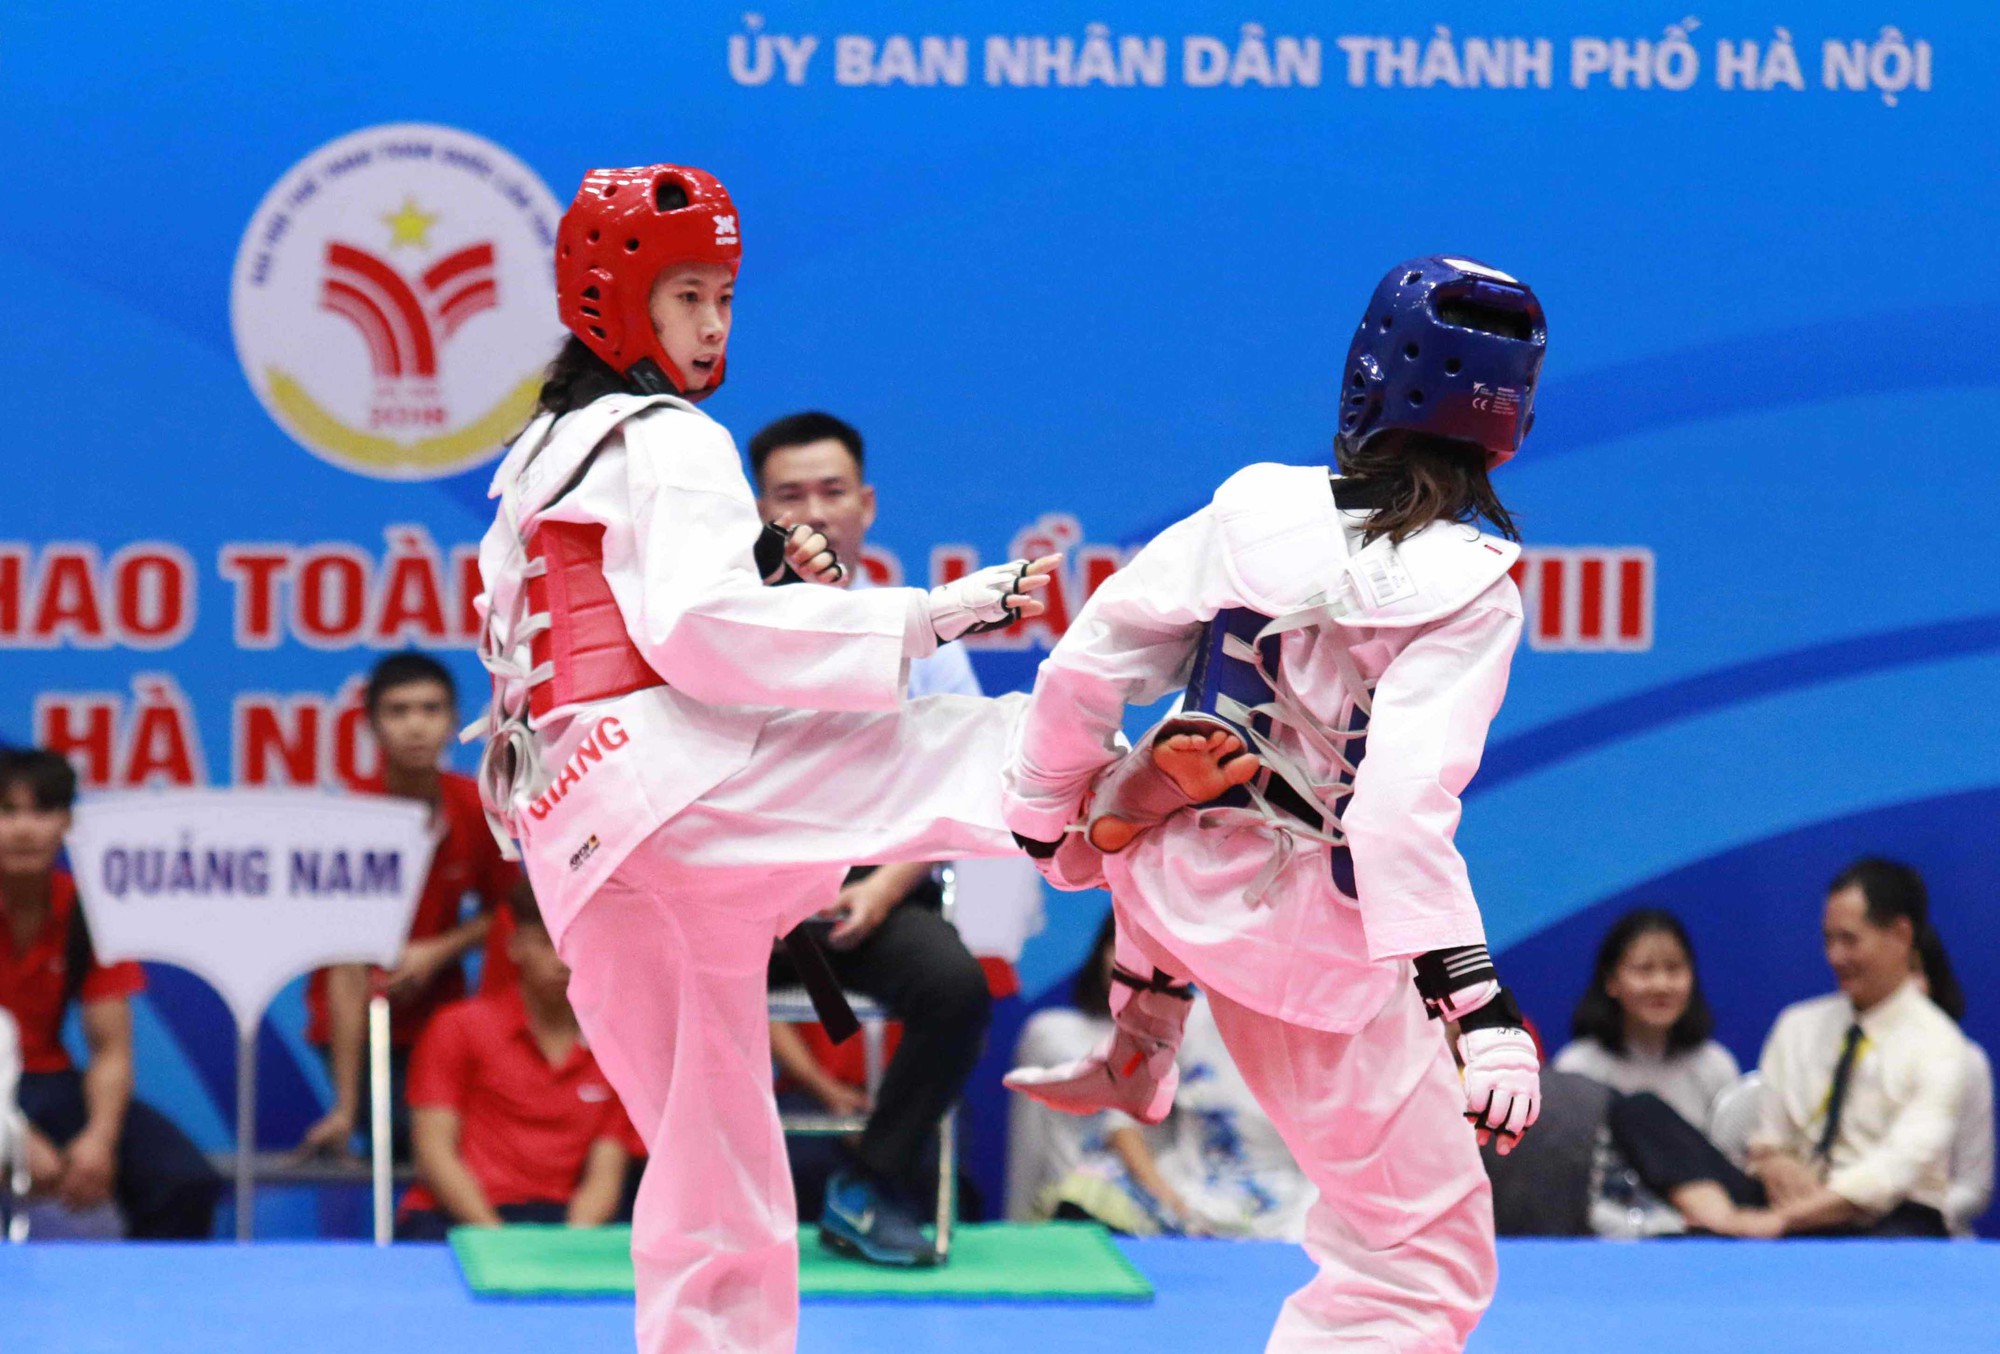 Taekwondo ĐH8: Hồ Thị Kim Ngân đại chiến Trương Thị Kim Tuyền nghẹt thở - Ảnh 2.